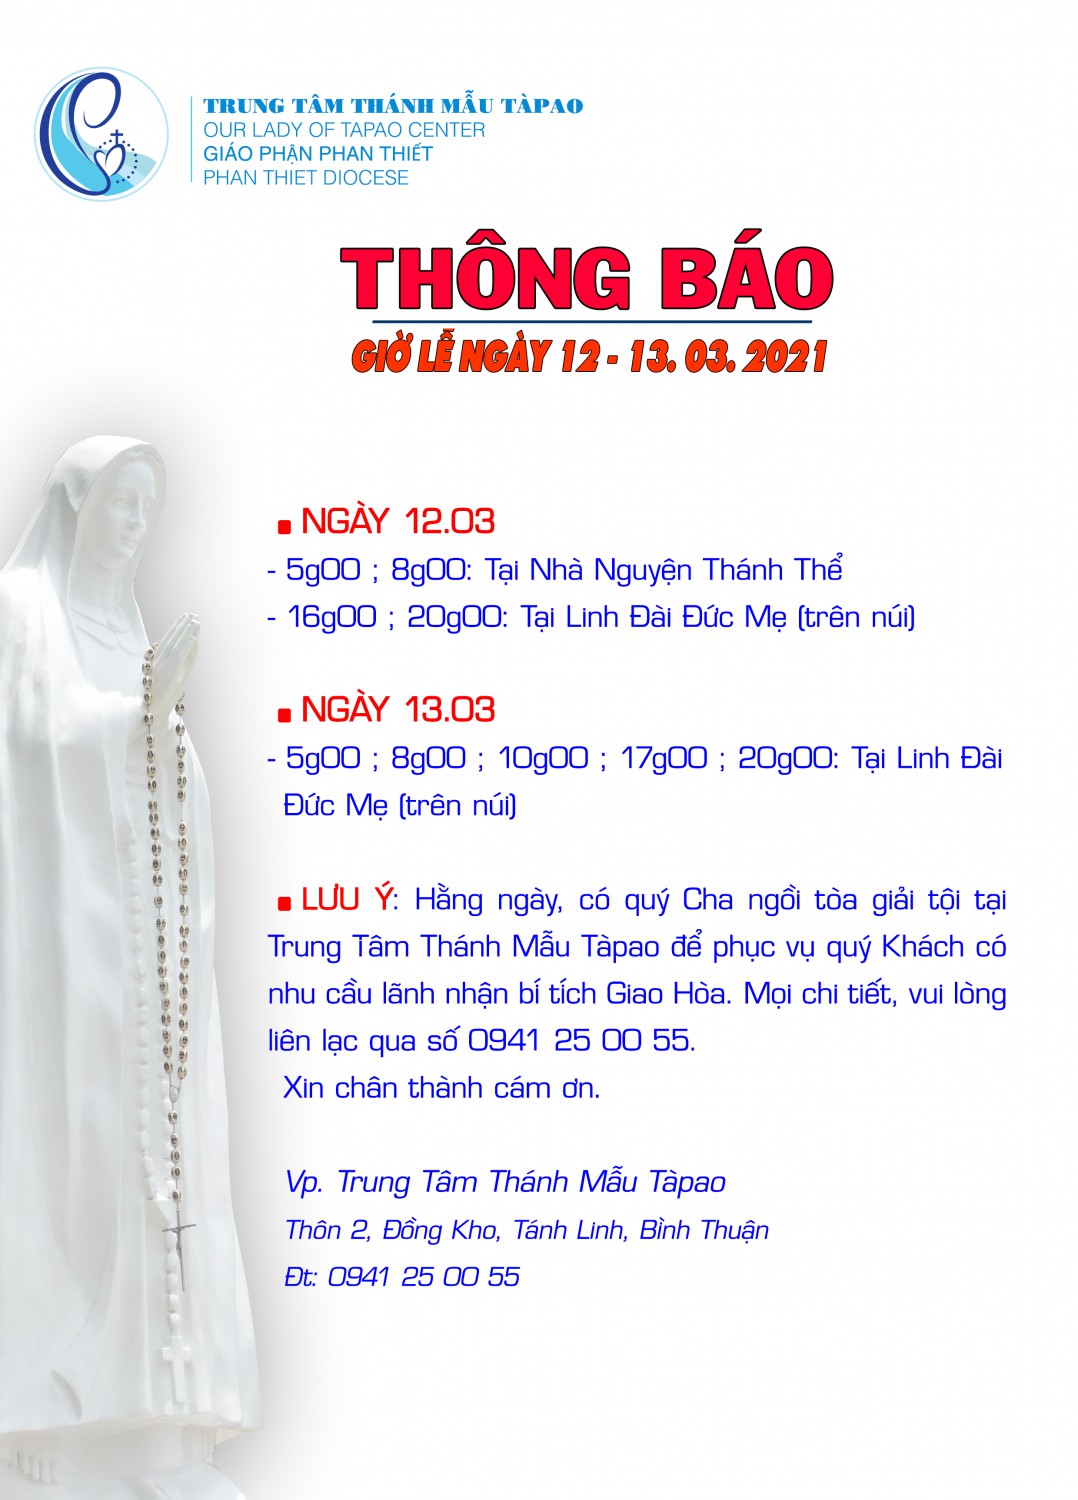 THONG BAO THANG 3 2021